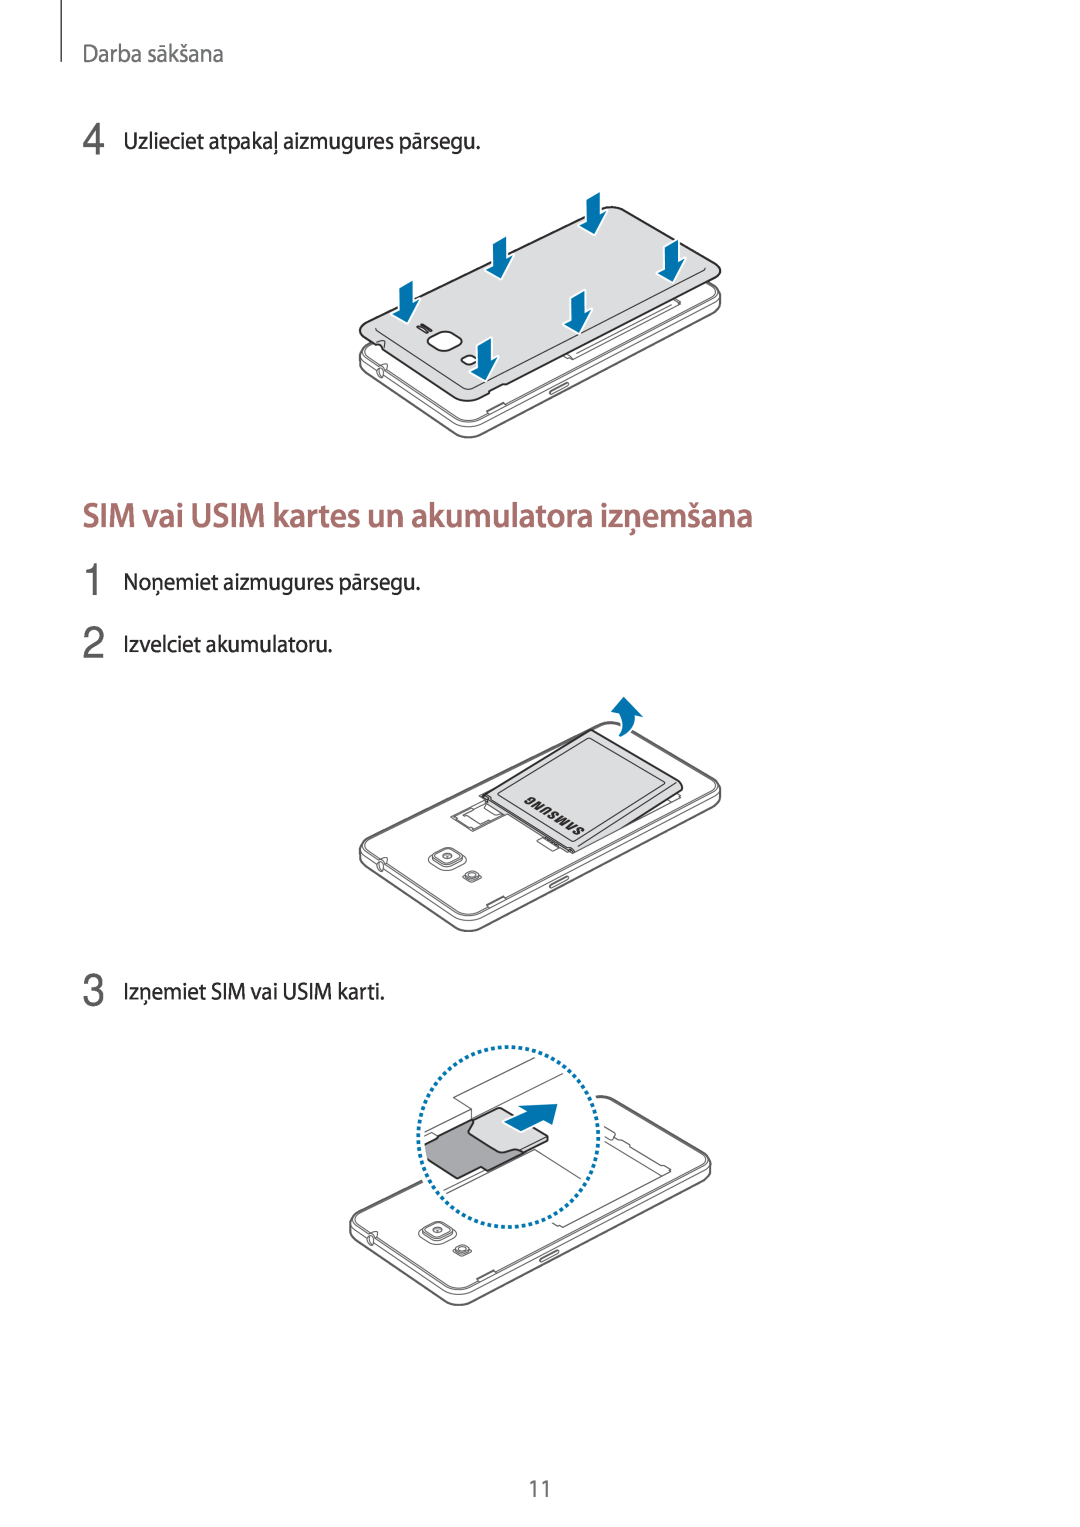 Samsung SM-G531FZDASEB SIM vai USIM kartes un akumulatora izņemšana, Darba sākšana, Uzlieciet atpakaļ aizmugures pārsegu 